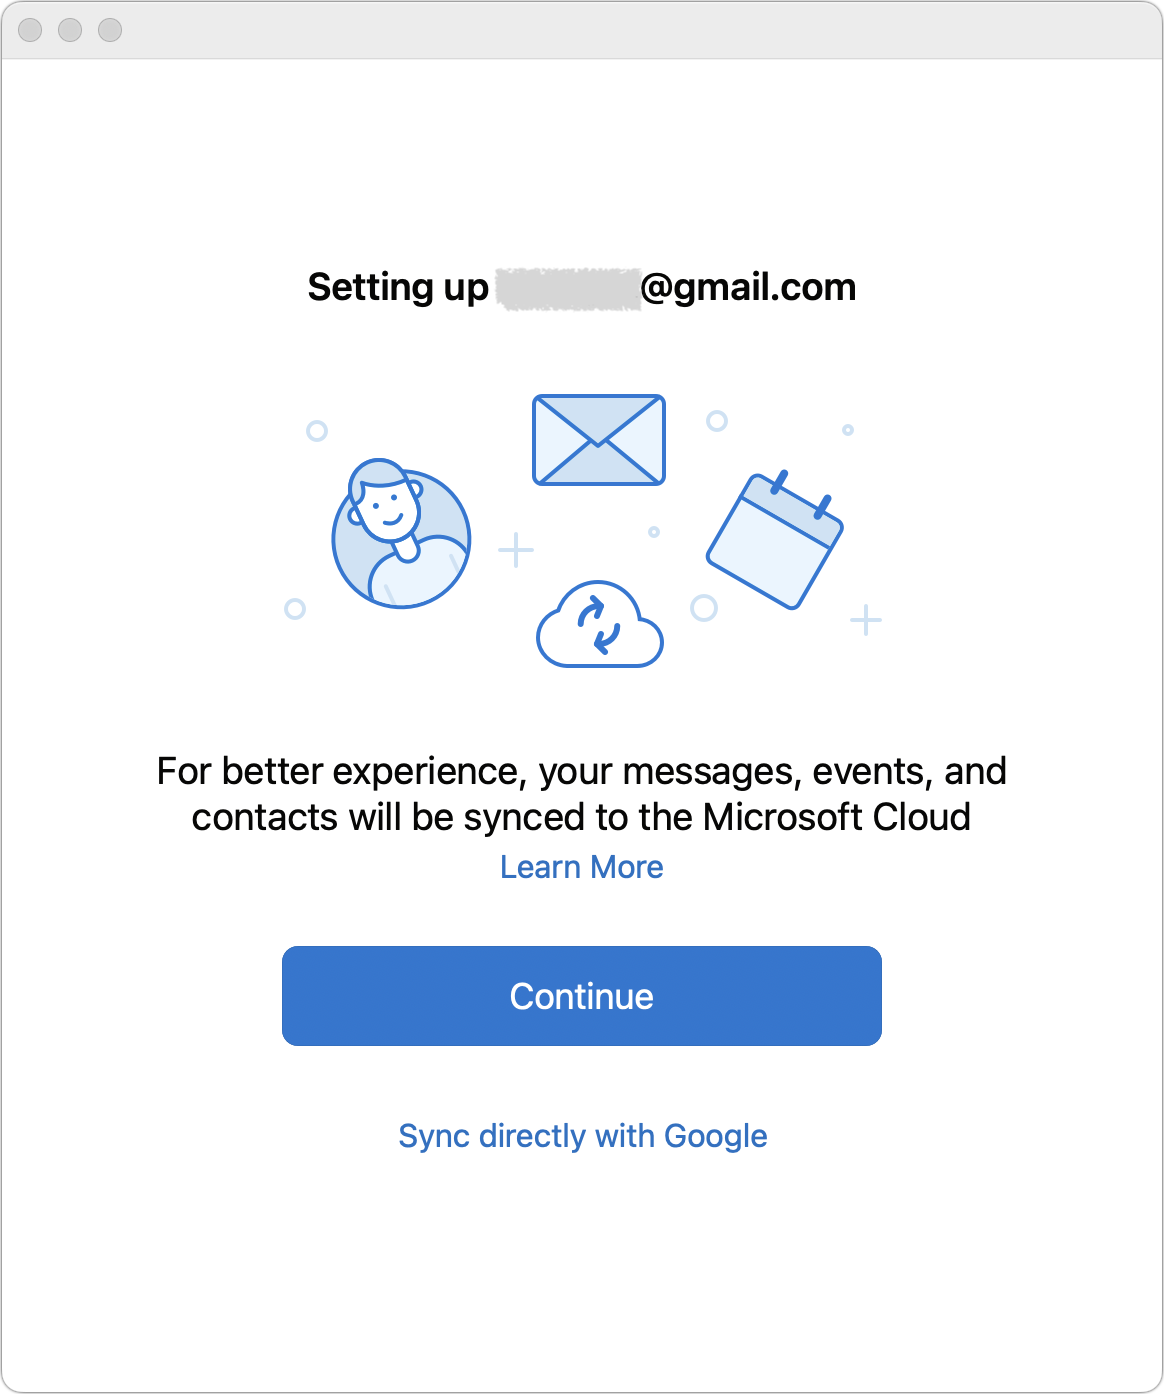 Como criar um e-mail grátis? ( Gmail, Hotmail/Outlook e Yahoo )